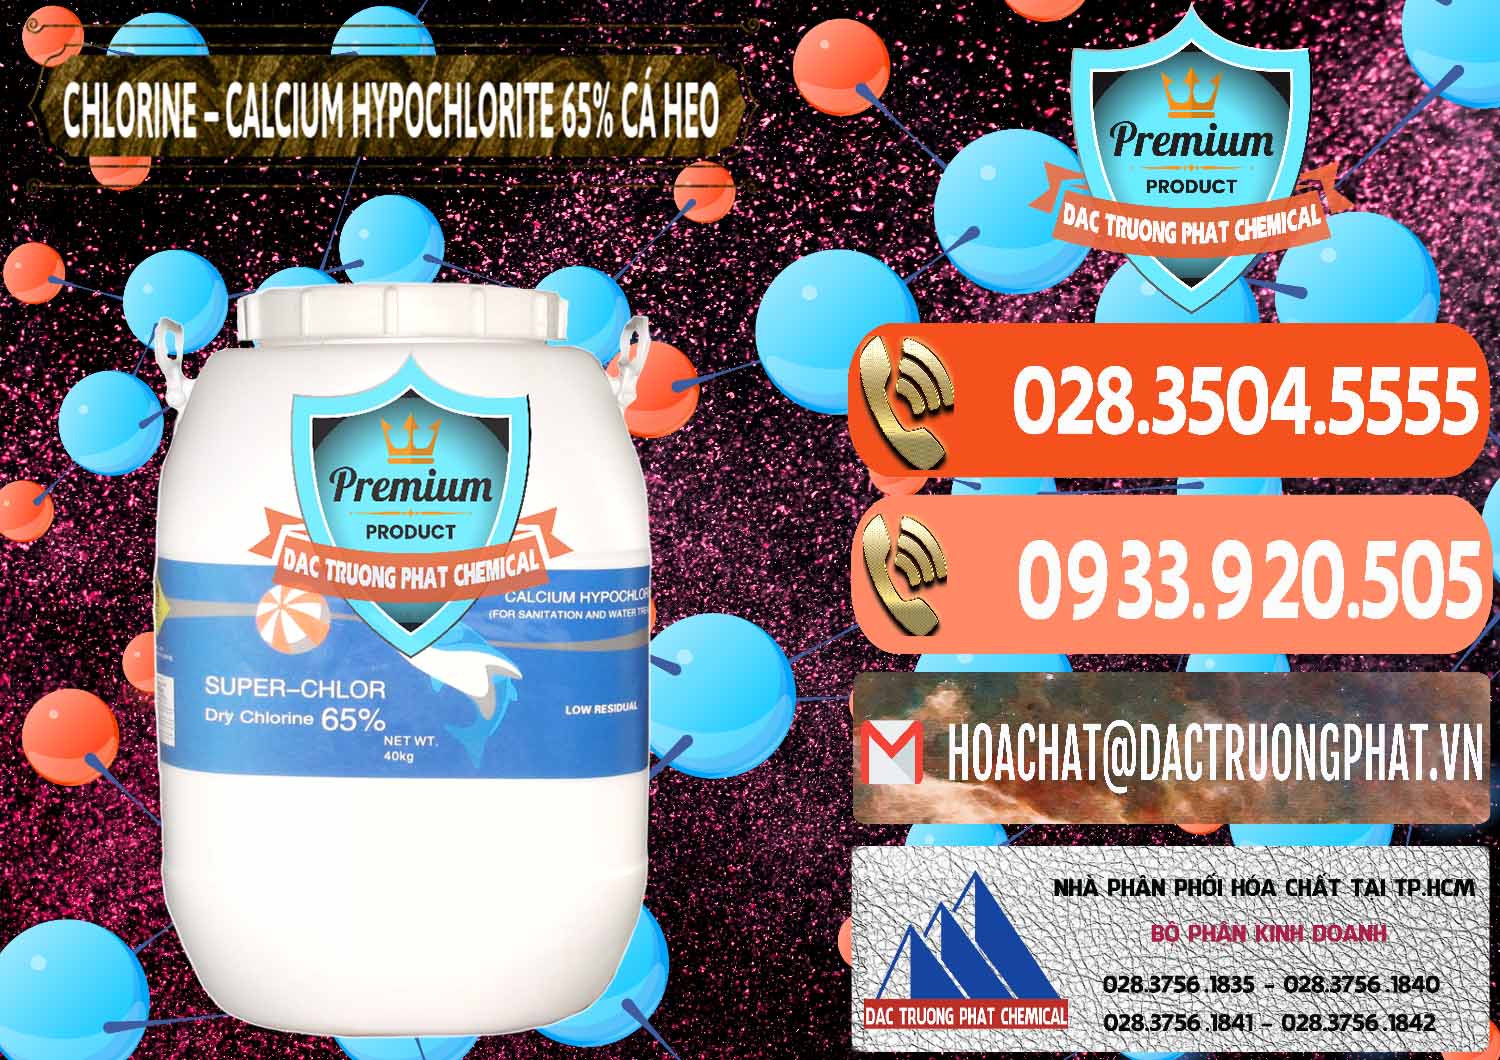 Chuyên cung cấp và bán Clorin - Chlorine Cá Heo 65% Trung Quốc China - 0053 - Nơi chuyên bán & cung cấp hóa chất tại TP.HCM - hoachatmientay.com